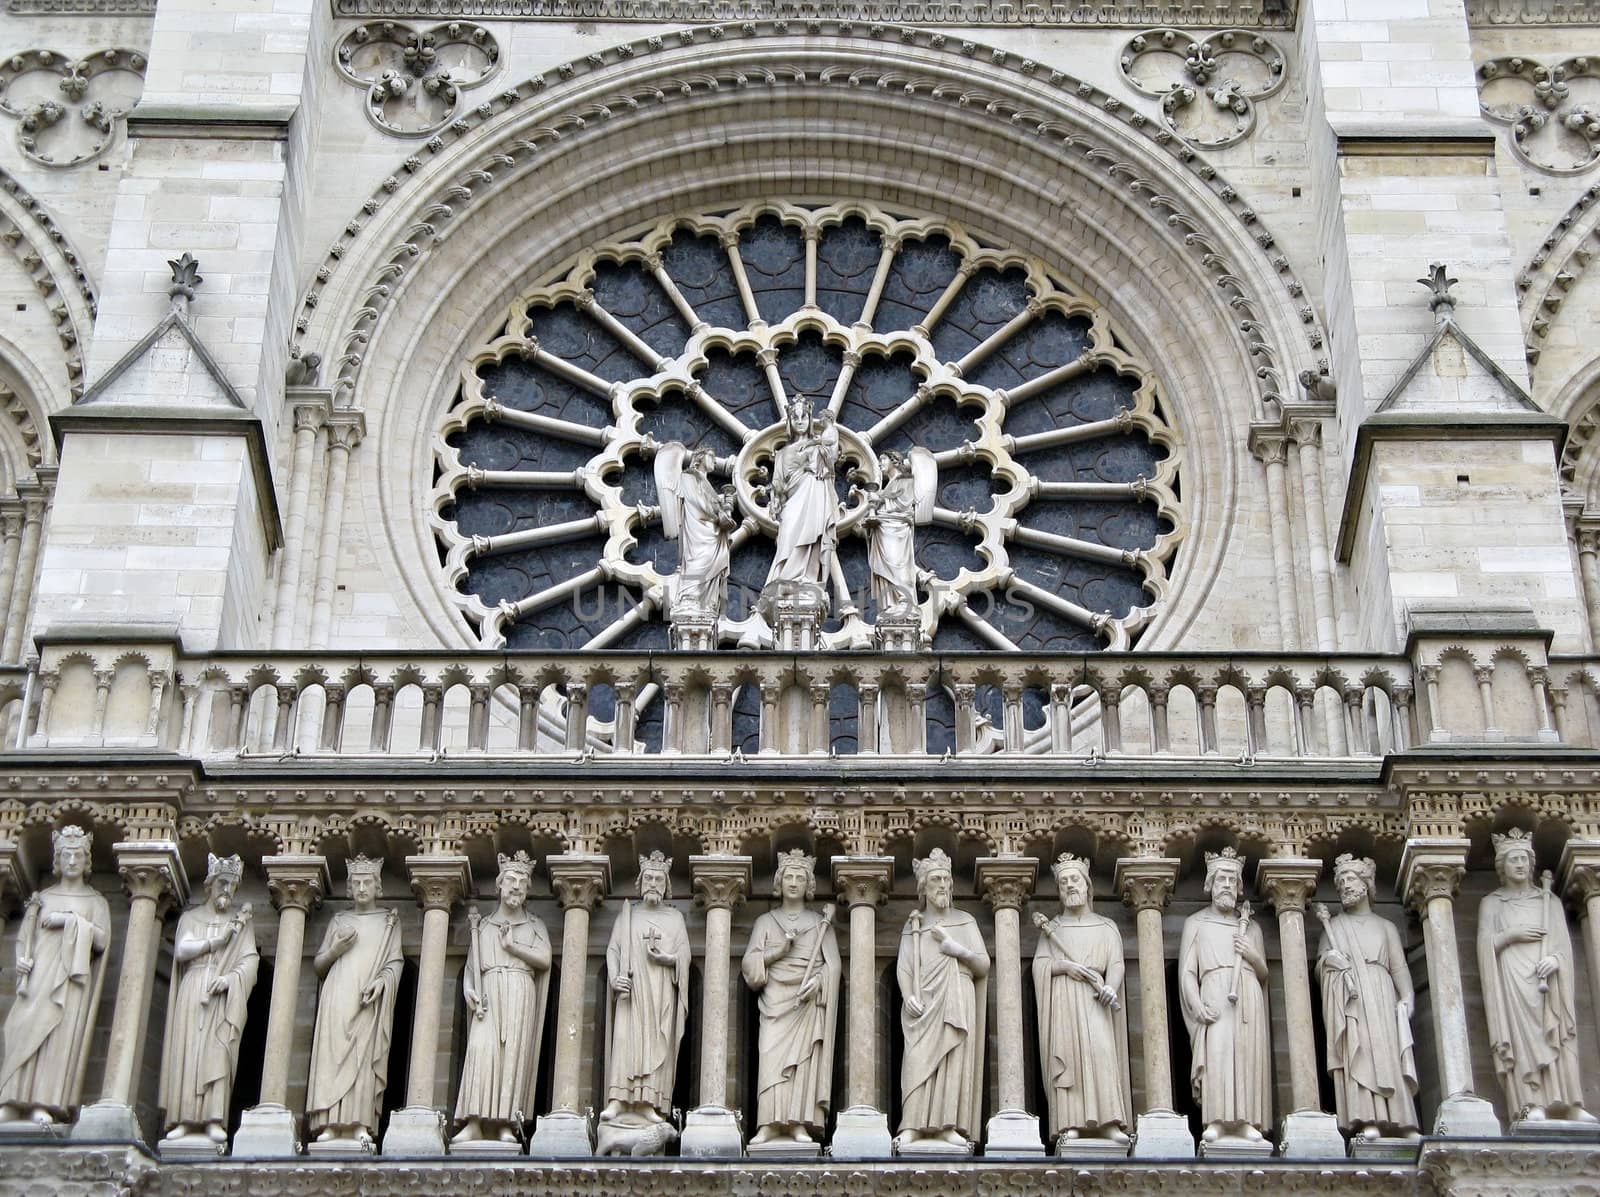 Detail view of the facade above the entrance of Norte Dame de Paris.